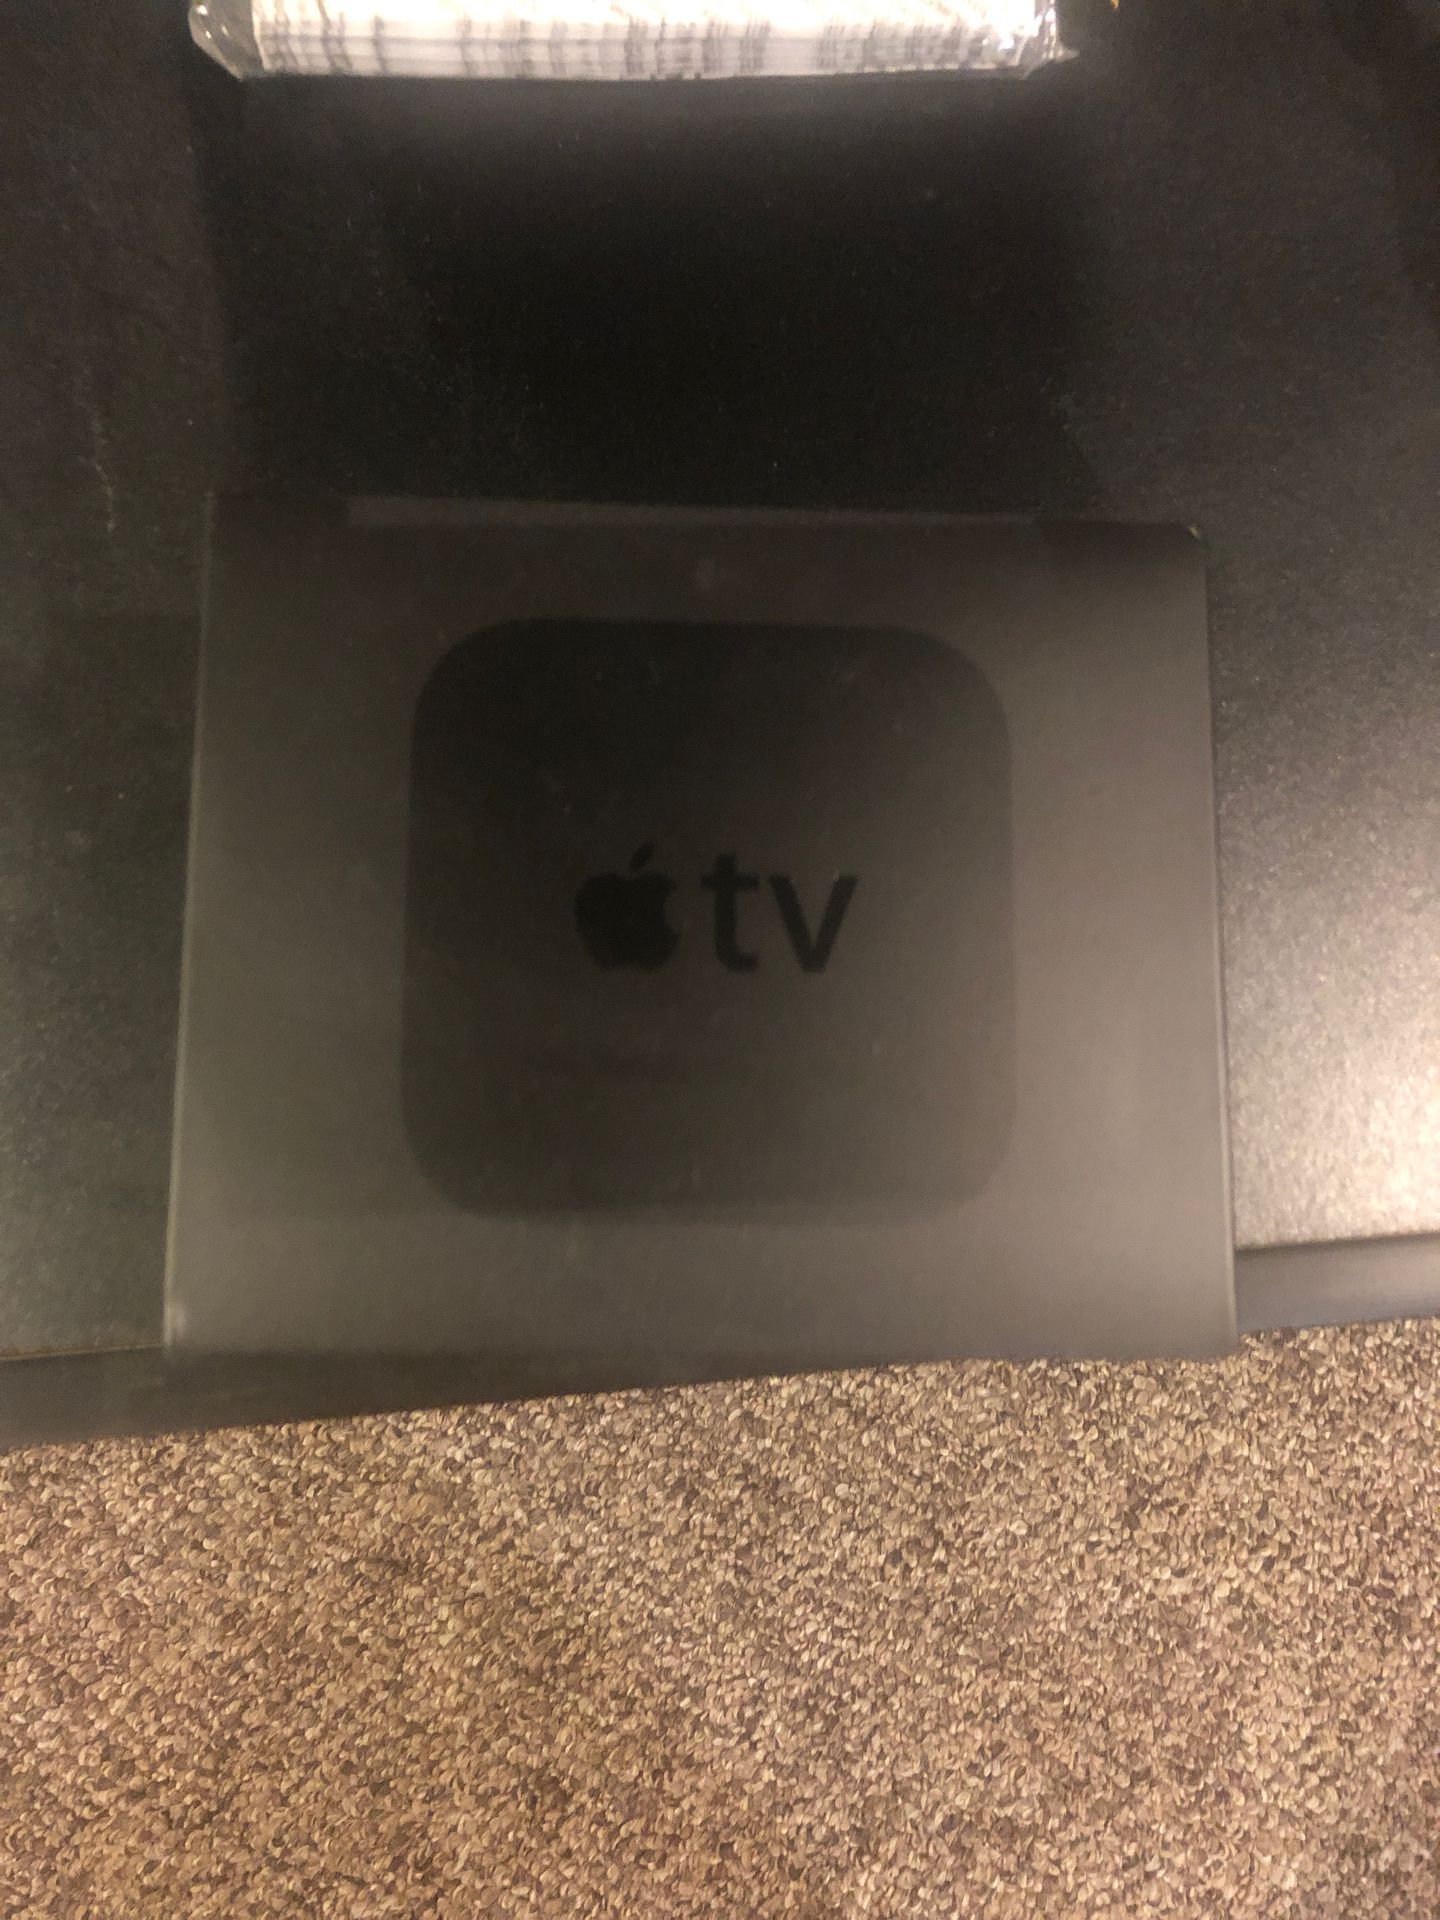 Apple TV never used